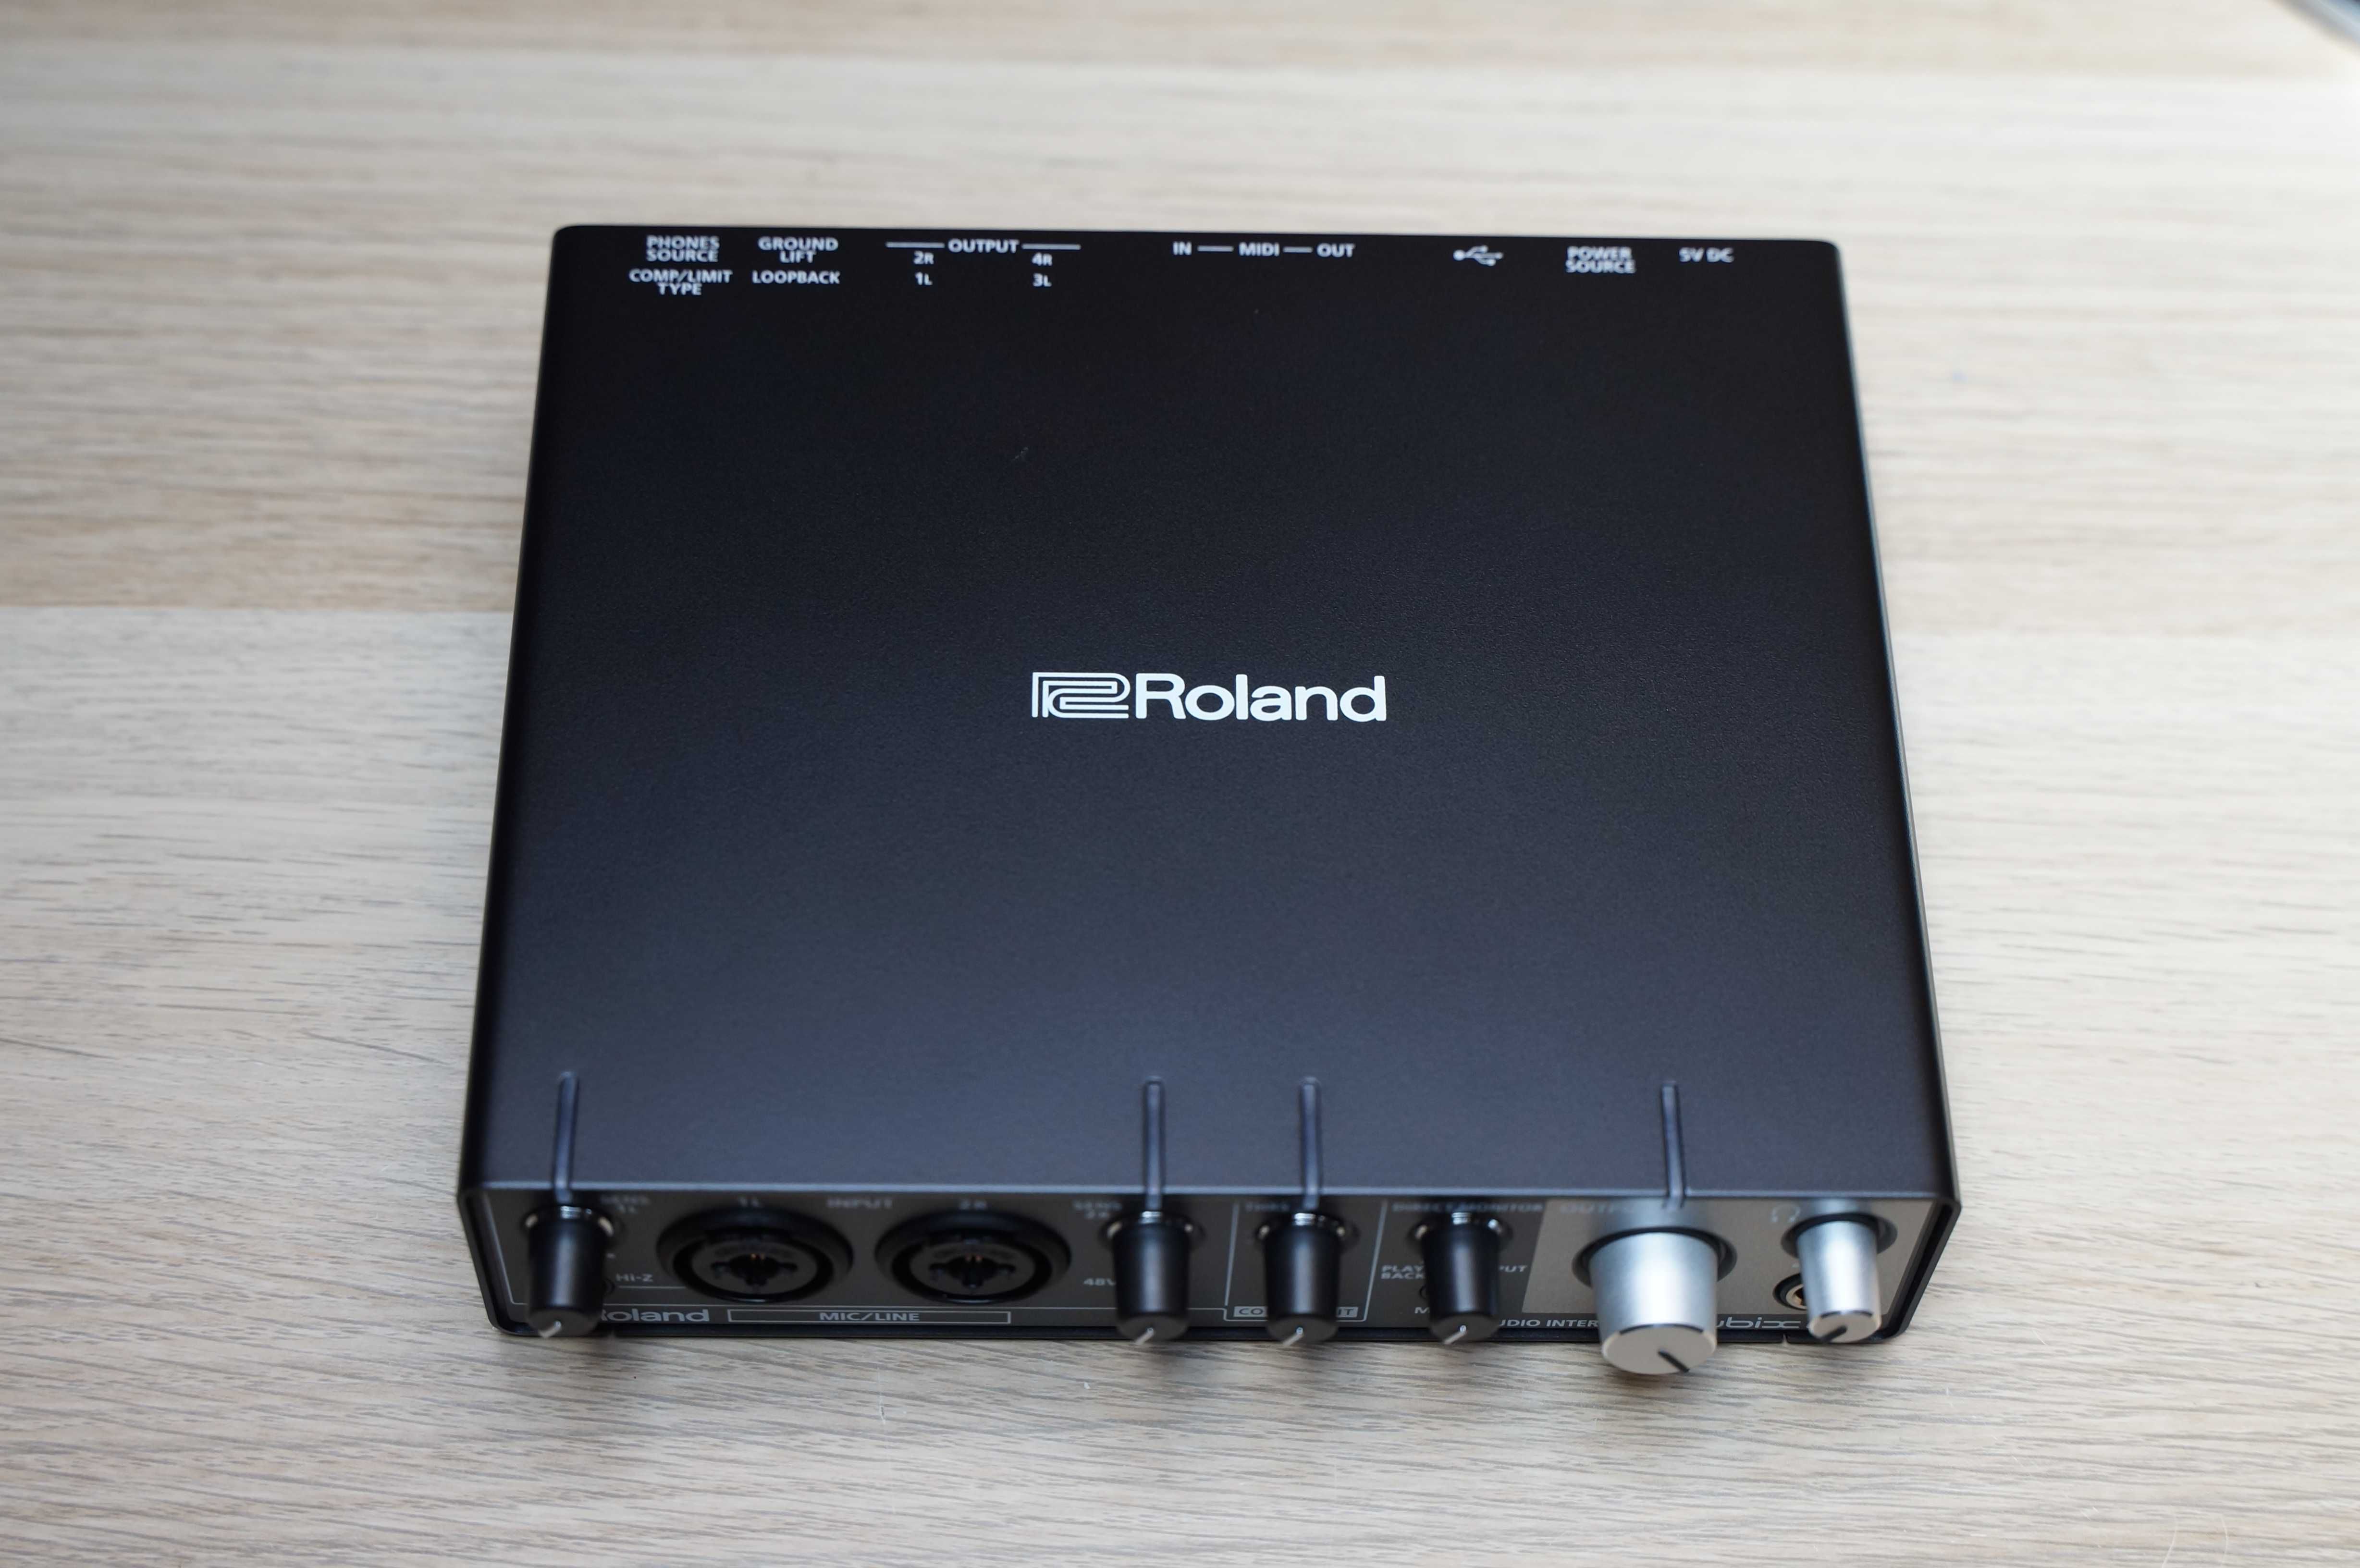 Interfață audio USB Roland Rubix24